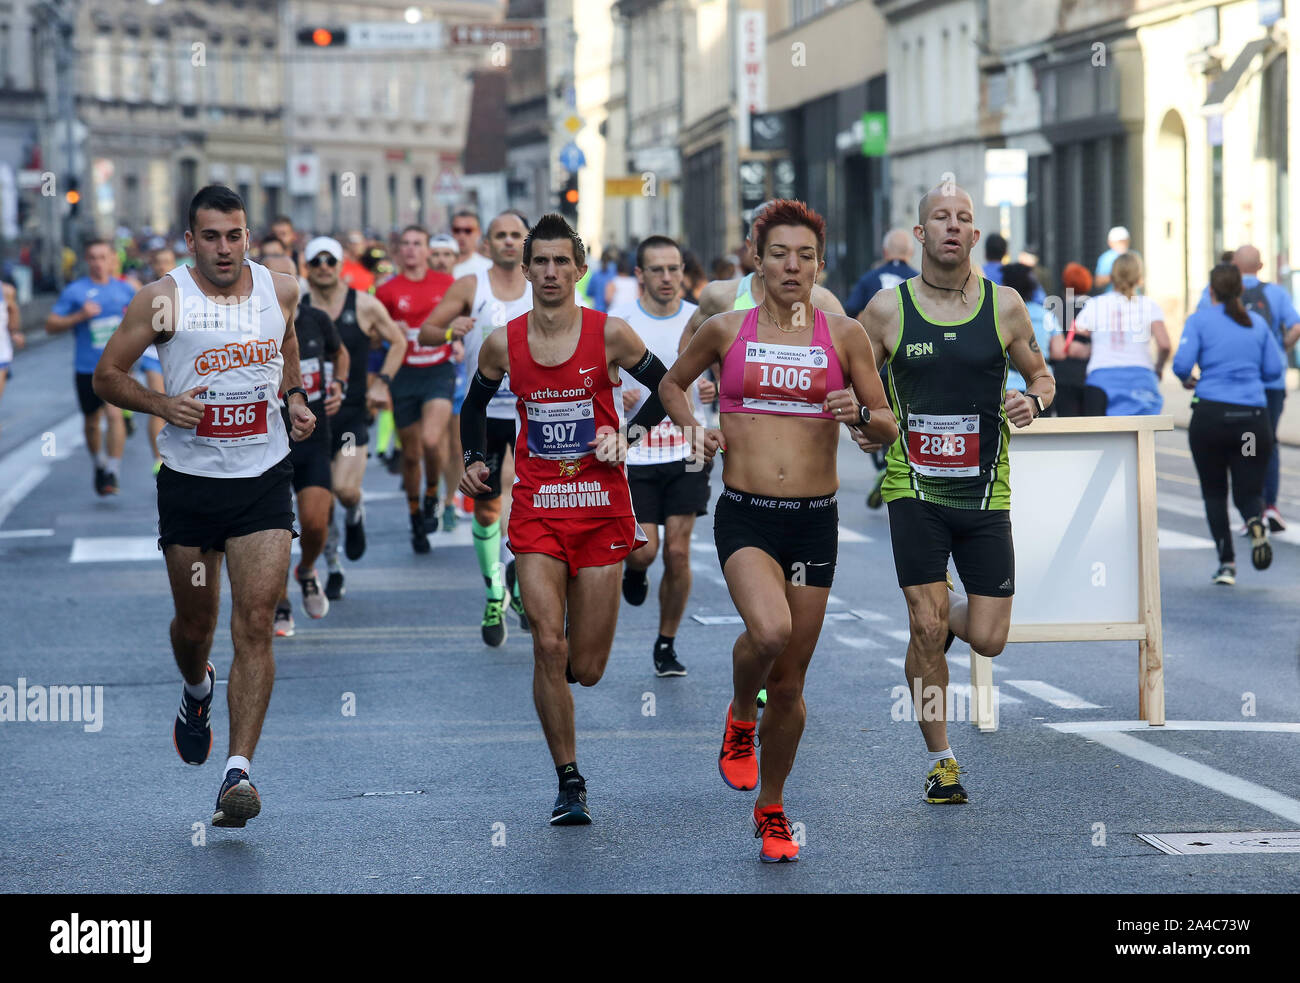 (191123) - Zagreb, Oktober 14, 2019 (Xinhua) - Läufer konkurrieren auf der 28 Zagreb Marathon in Zagreb, Kroatien, Okt. 13, 2019. (Marin Tironi/Pixsell über Xinhua) Stockfoto